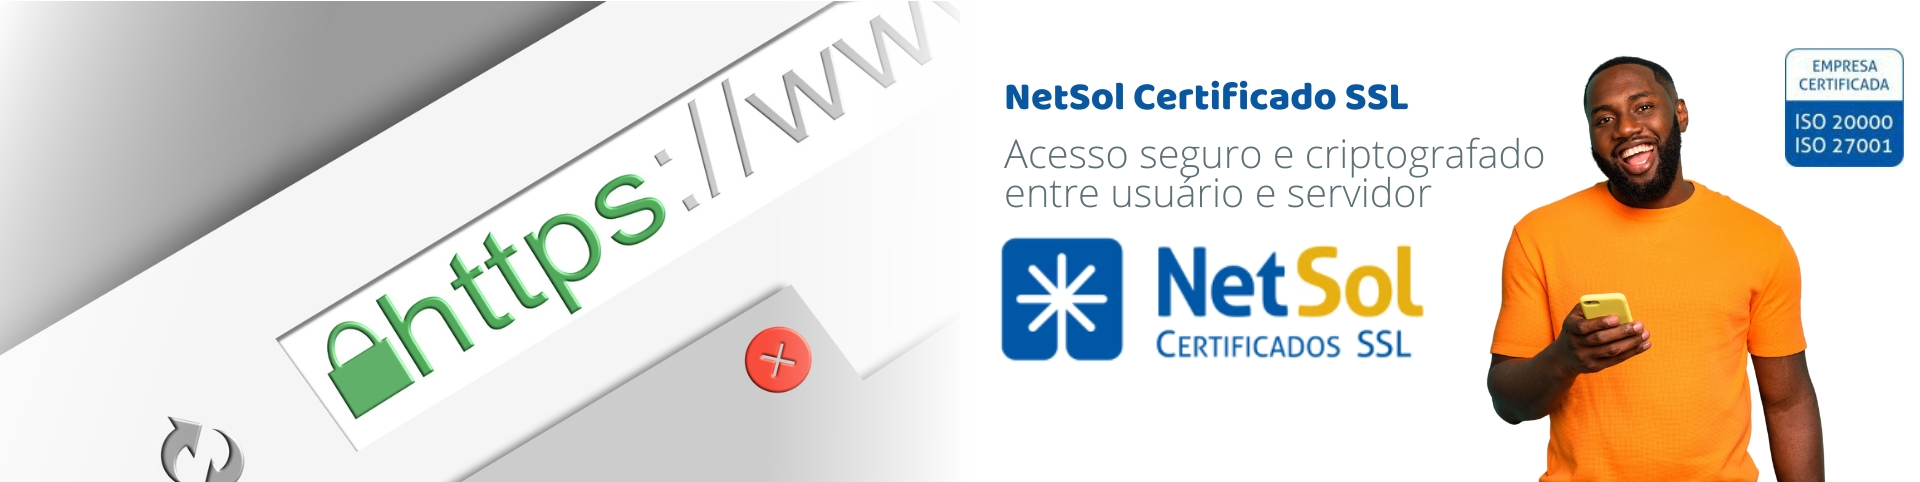 NetSol_CertificadoSSL